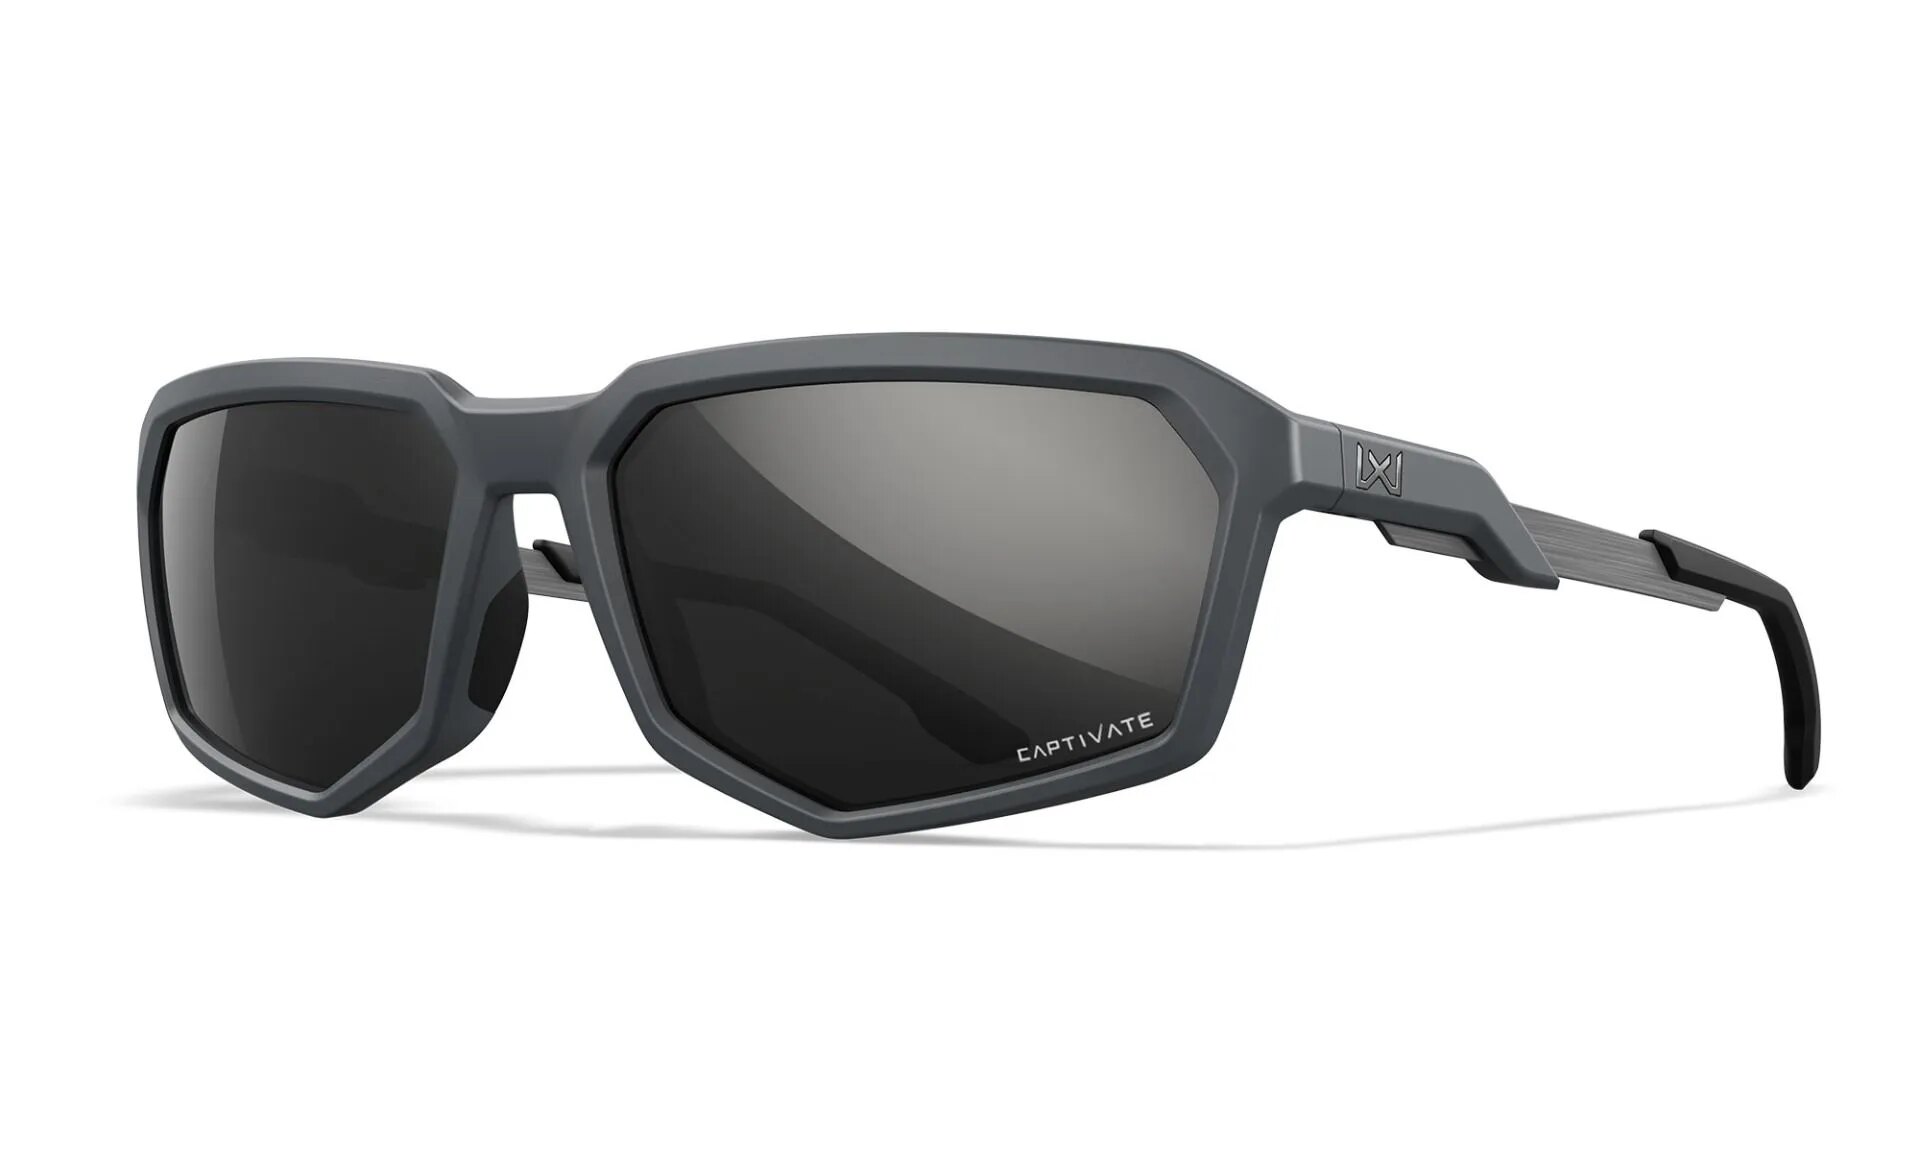 Slnečné okuliare Recon Captivate Wiley X® – Captivate™ čierne polarizované Mirror, Sivá (Farba: Sivá, Šošovky: Captivate™ čierne polarizované Mirror)